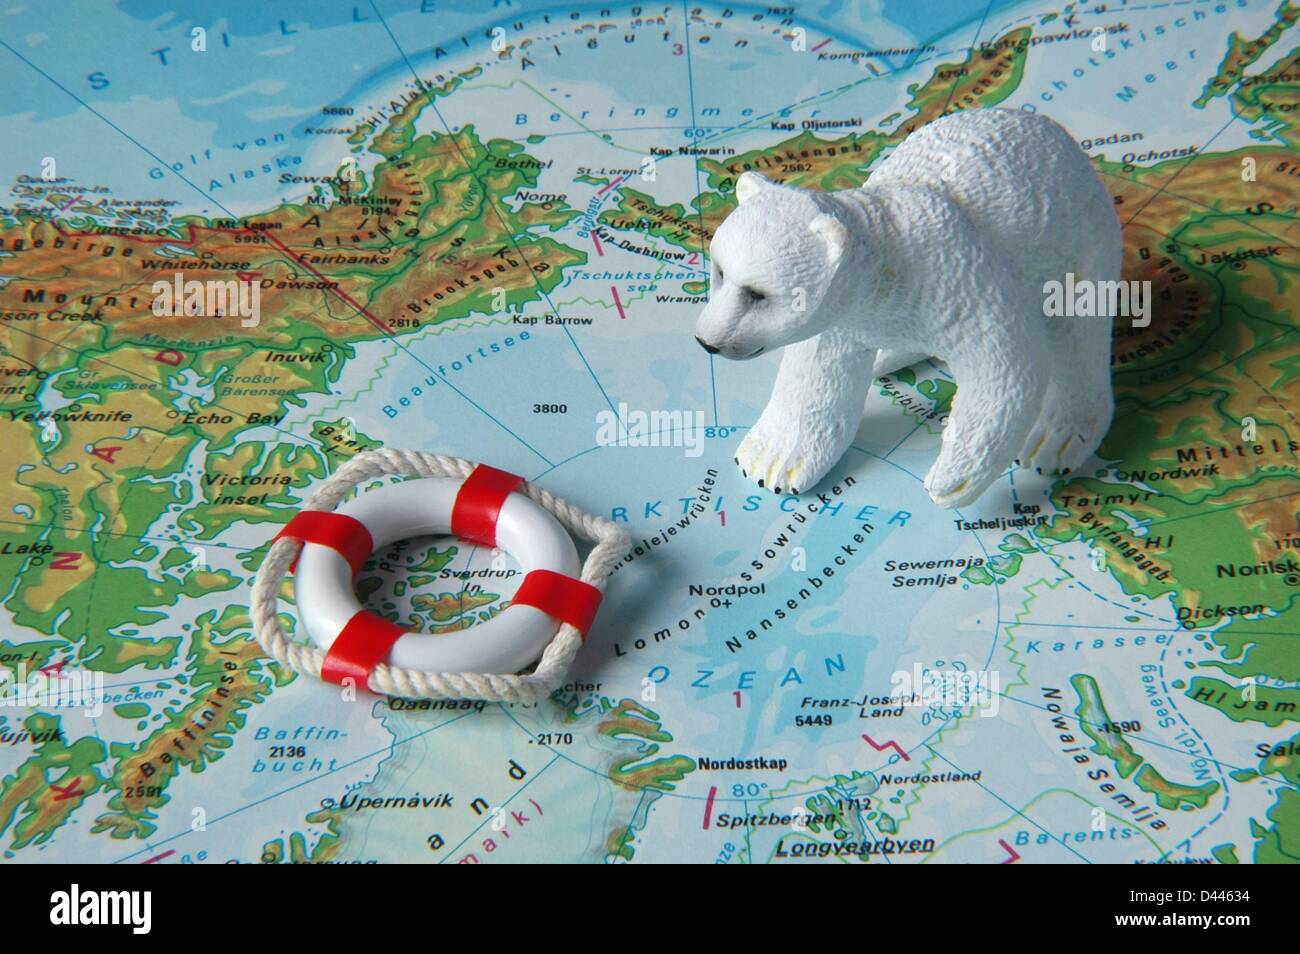 Illustration - sitzt eine Eisbär Miniatur Figur neben einer Miniatur-Sicherheit-Boje auf einer Karte in der Nähe des Nordpols in Berlin, Deutschland, 22. Dezember 2007. Foto: Berliner Verlag/S.Steinach Stockfoto